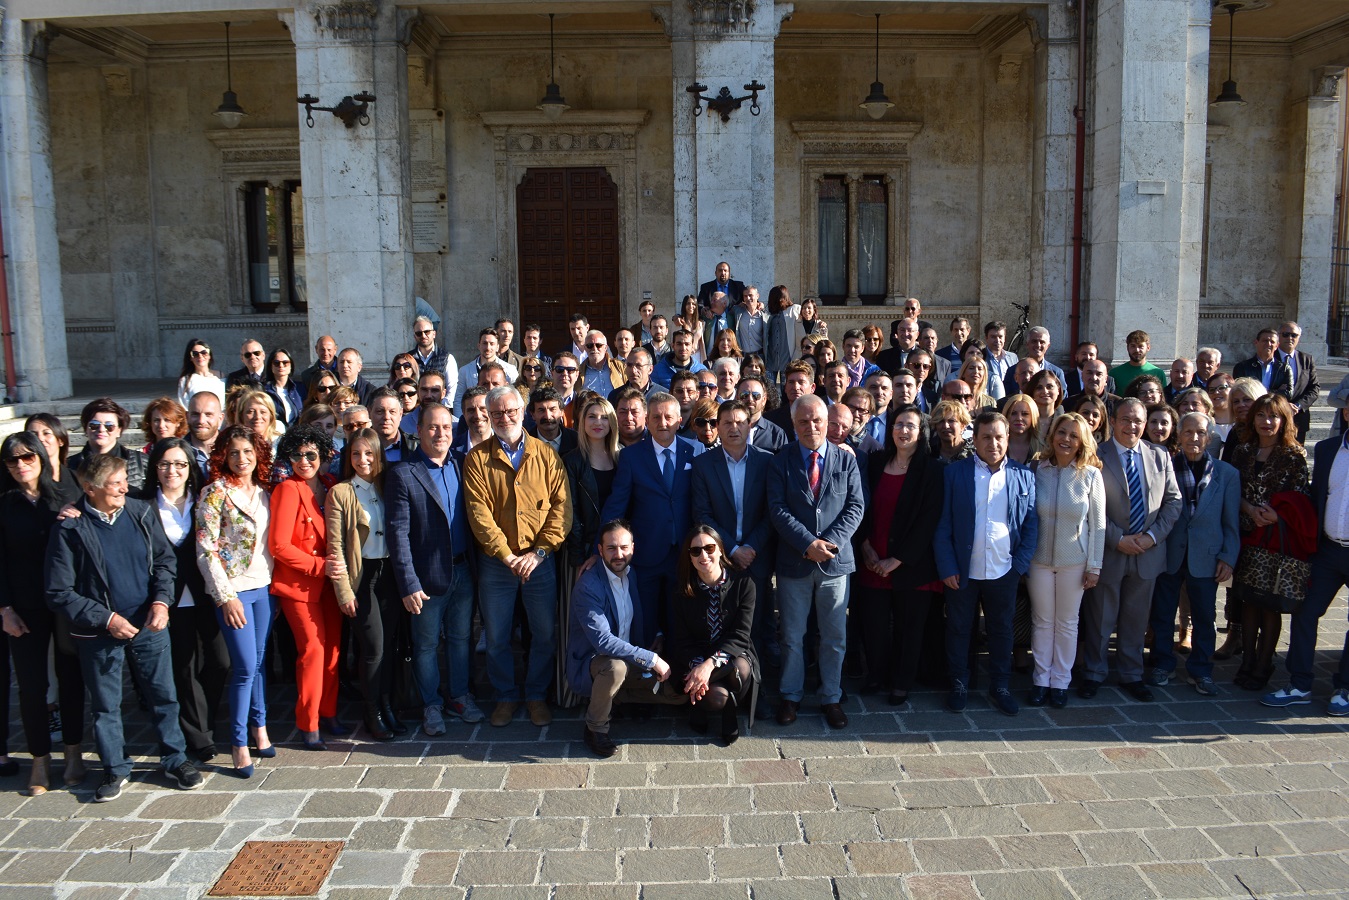 Foto a sorpresa con i candidati per il sindaco Giovanni Di Pangrazio